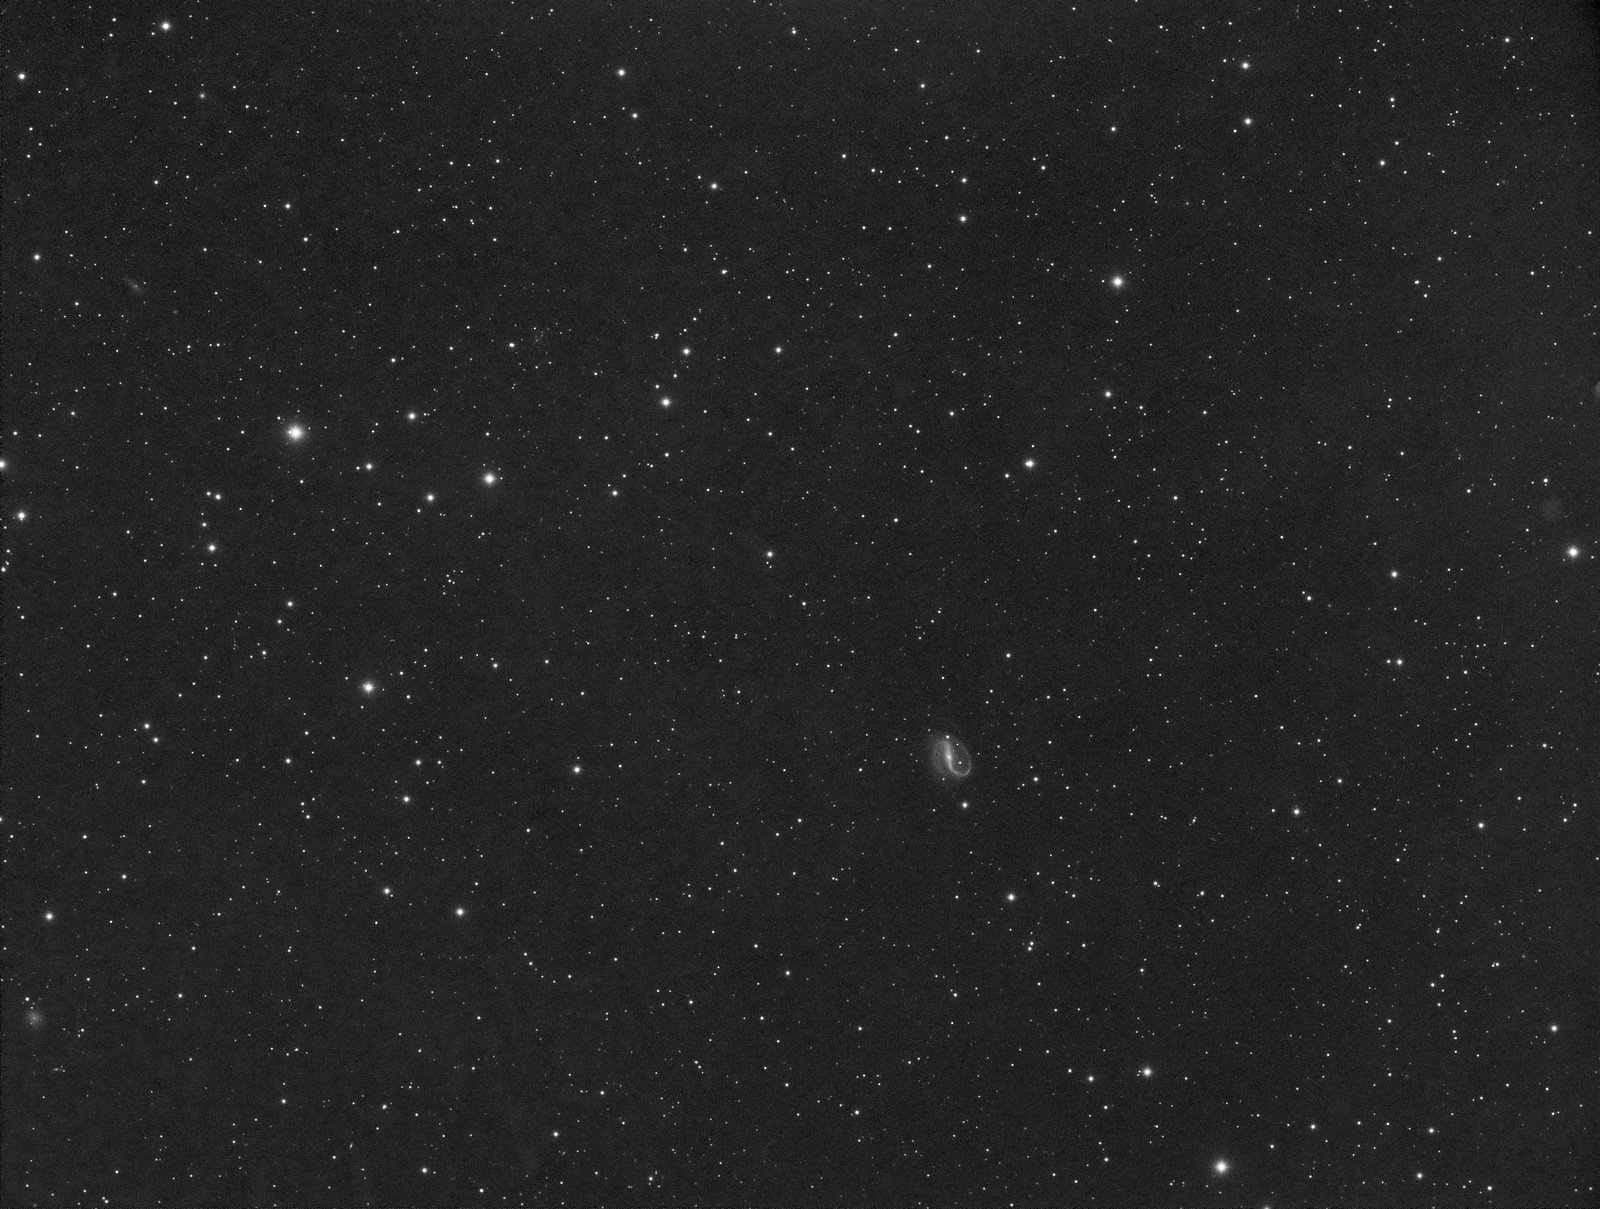 044 - NGC 7479 - Luminance